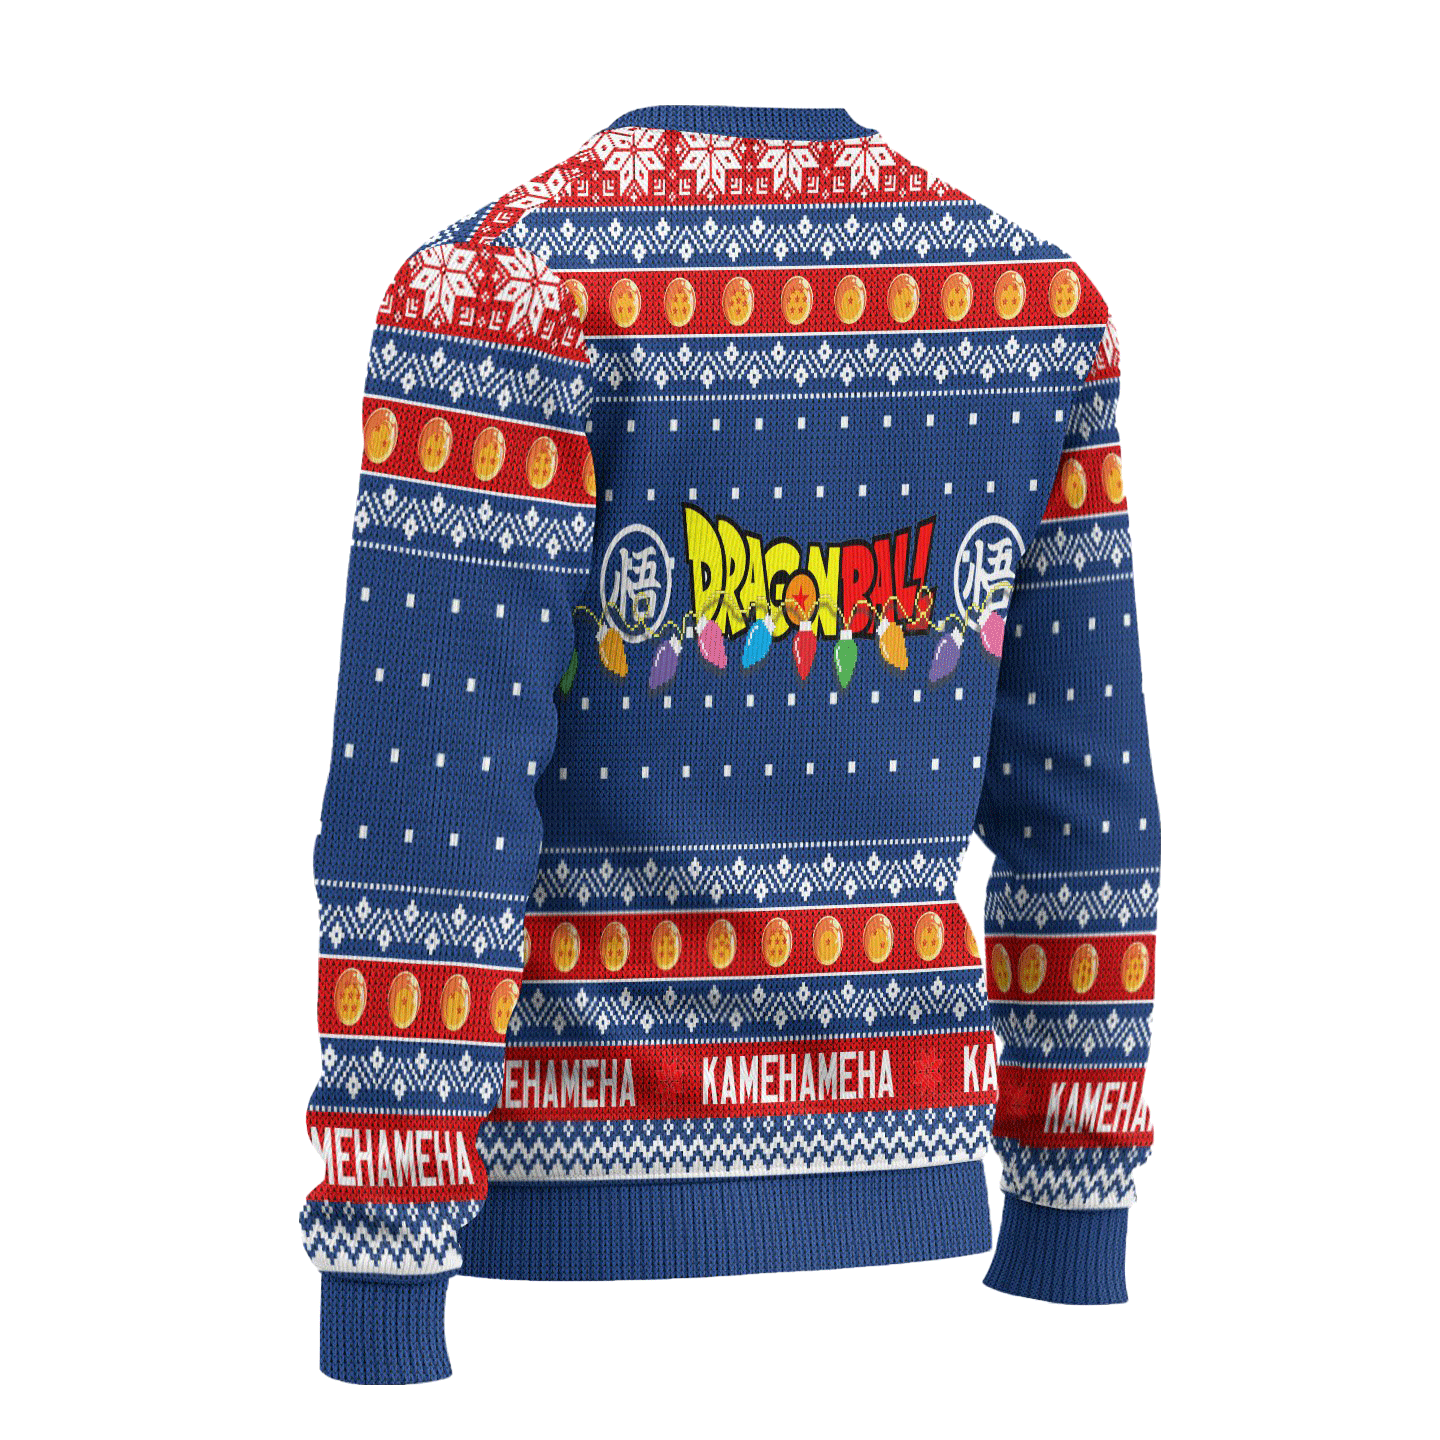 Future Trunks Dragon Ball Anime Ugly Christmas Sweater Xmas Gift